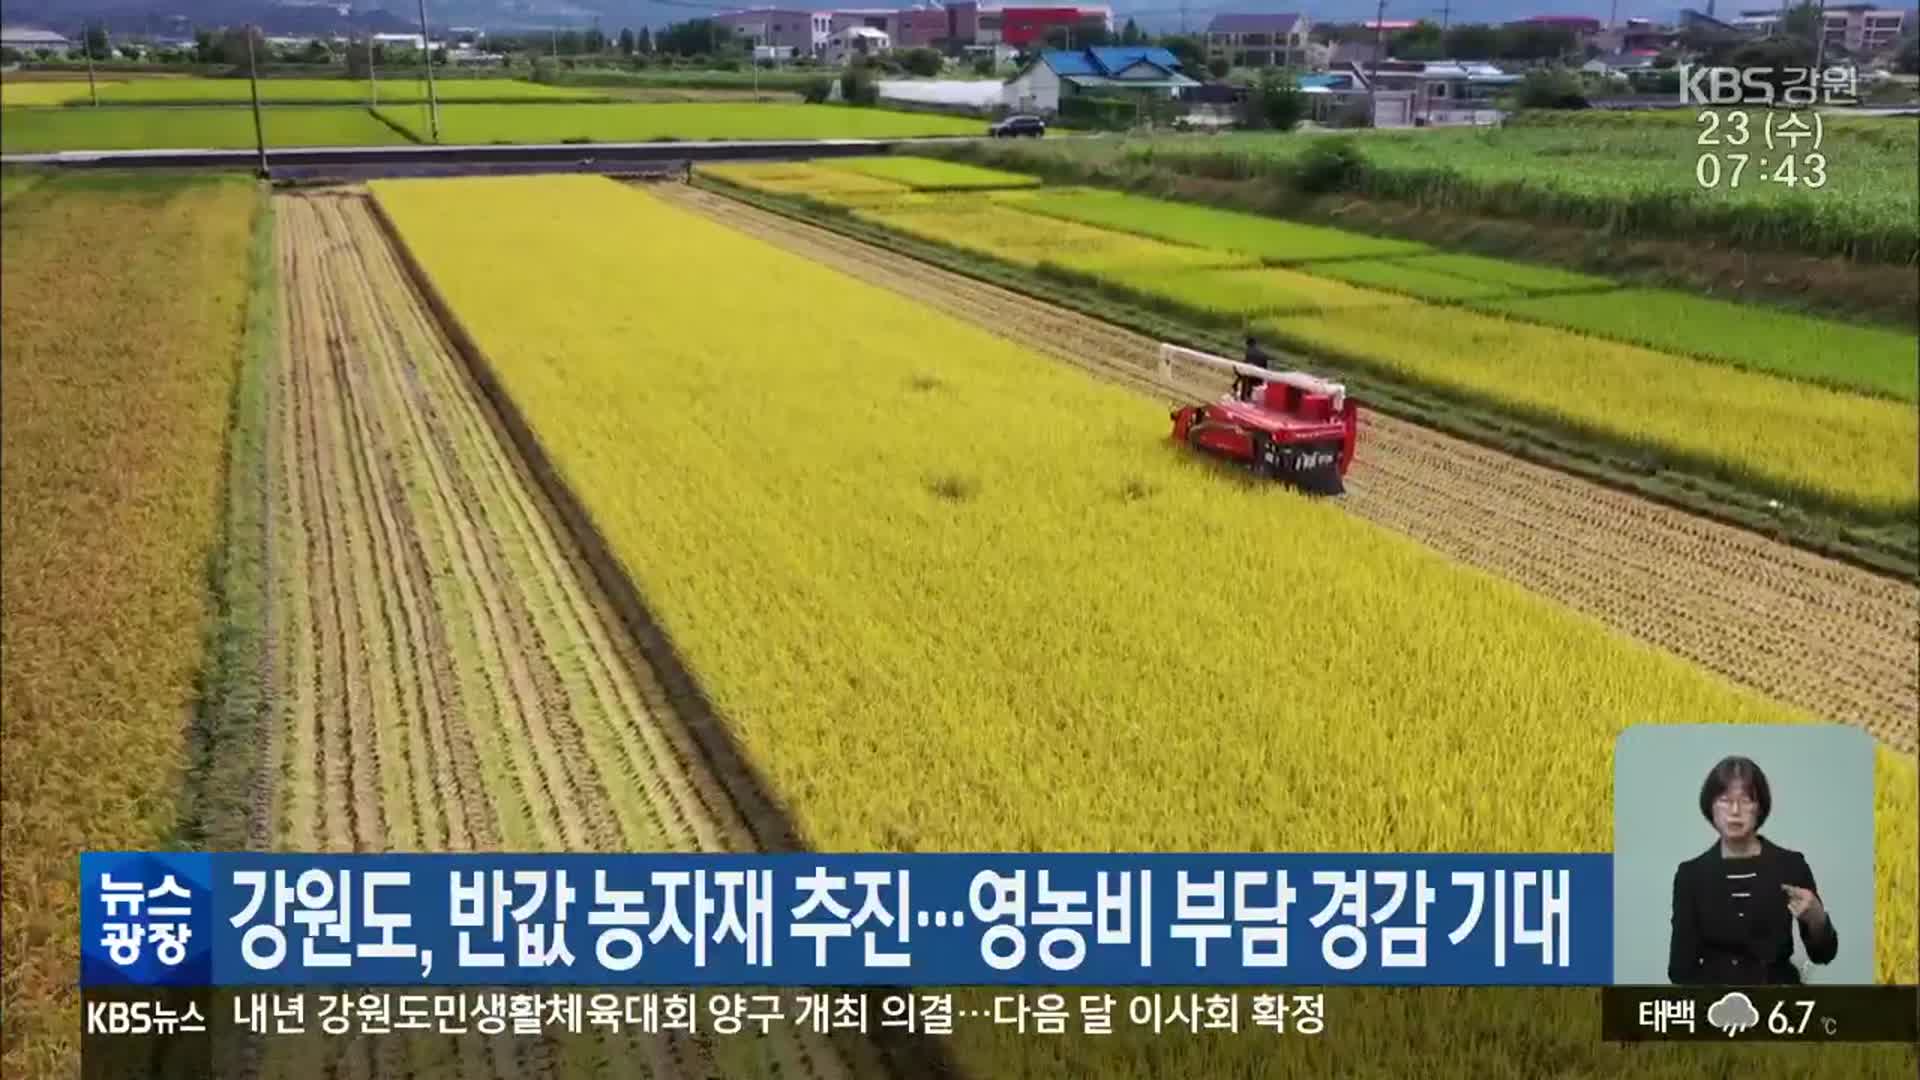 강원도, 반값 농자재 추진…영농비 부담 경감 기대